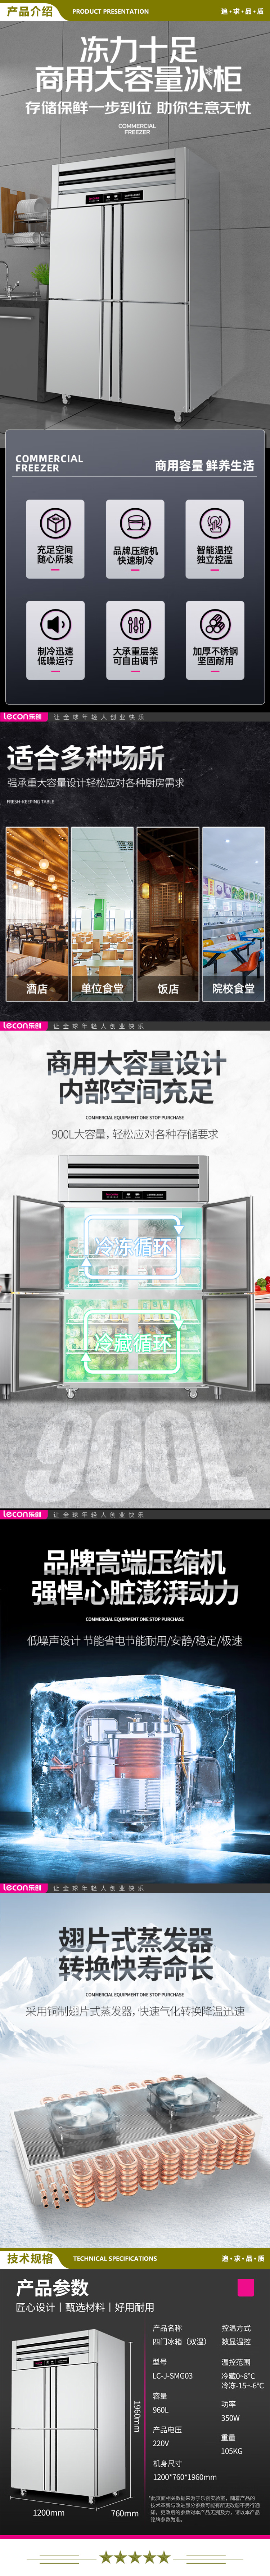 乐创(lecon) LC-J-SMG03 商用四门冰柜 立式厨房保鲜柜节能压缩机 工程豪华款双温   2.jpg